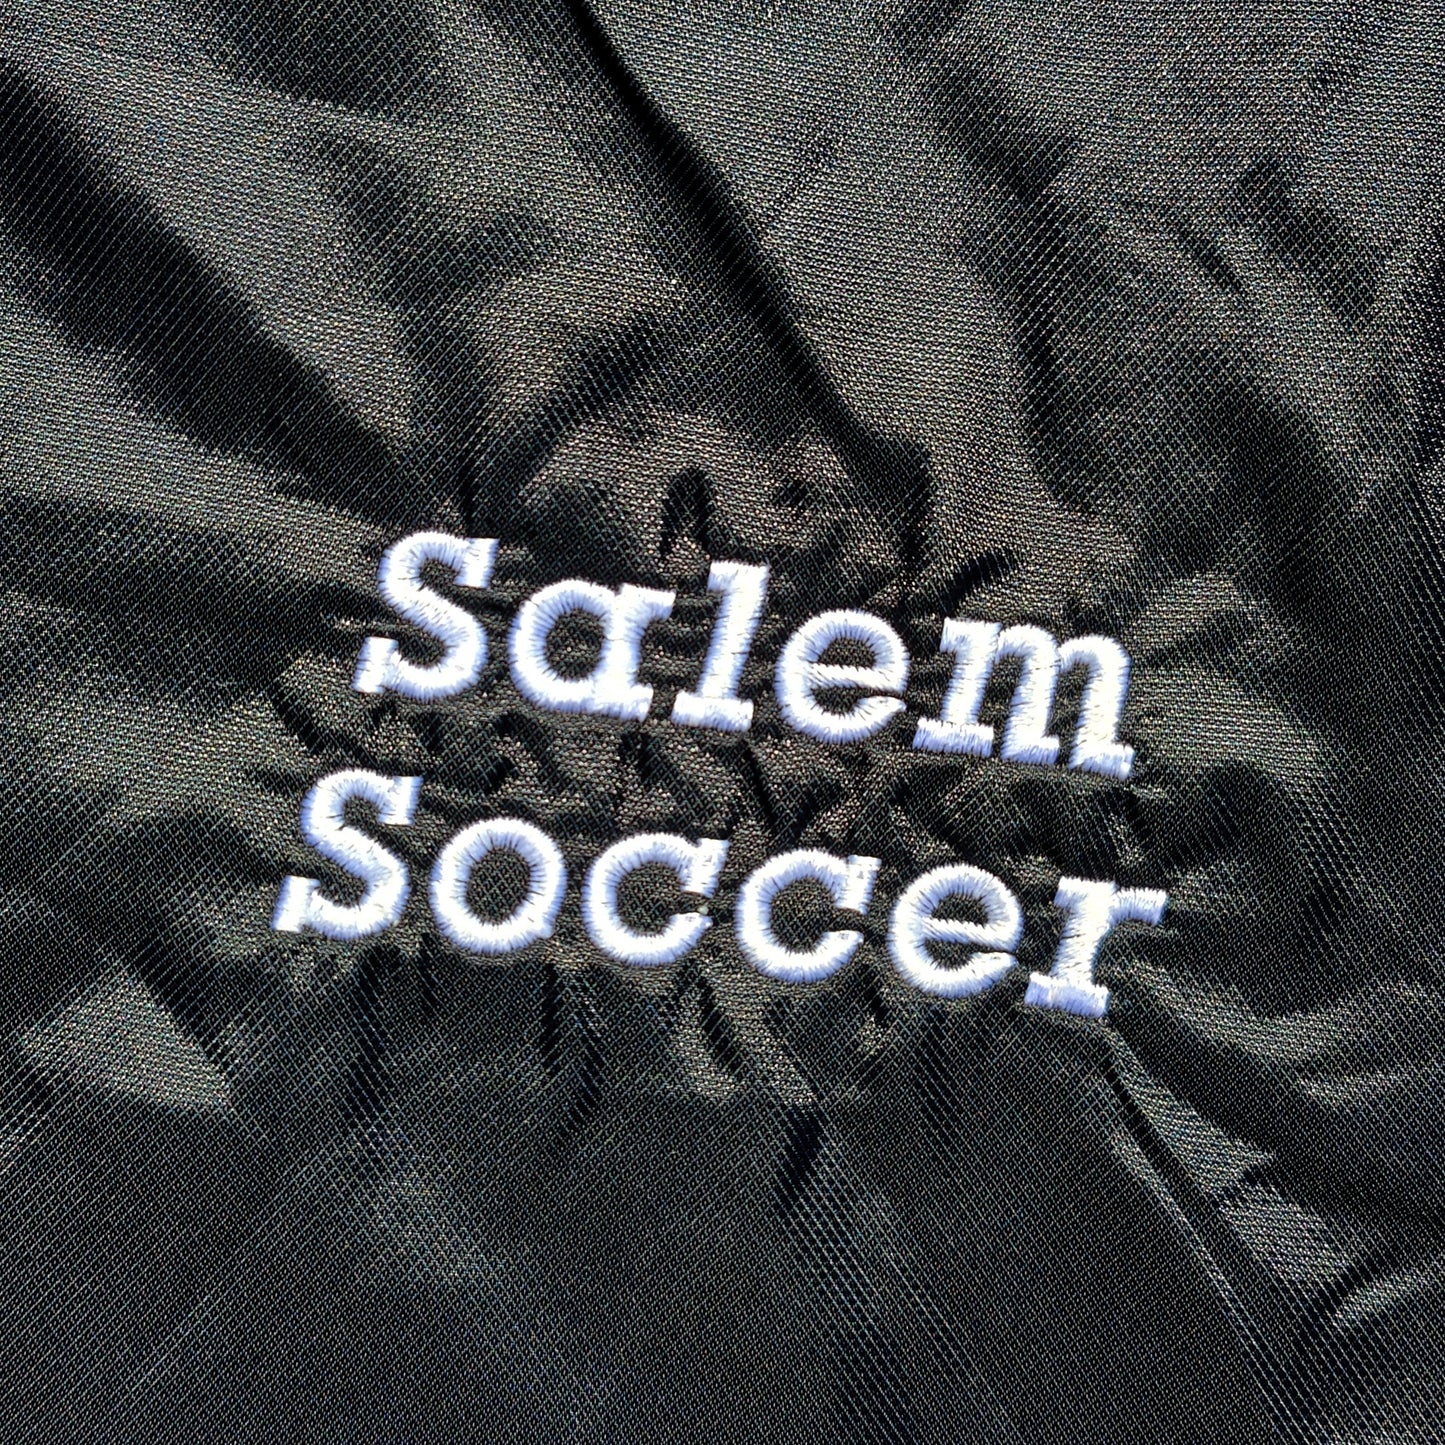 Adidas Track Jacket (Salem Soccer) - MEDIUM